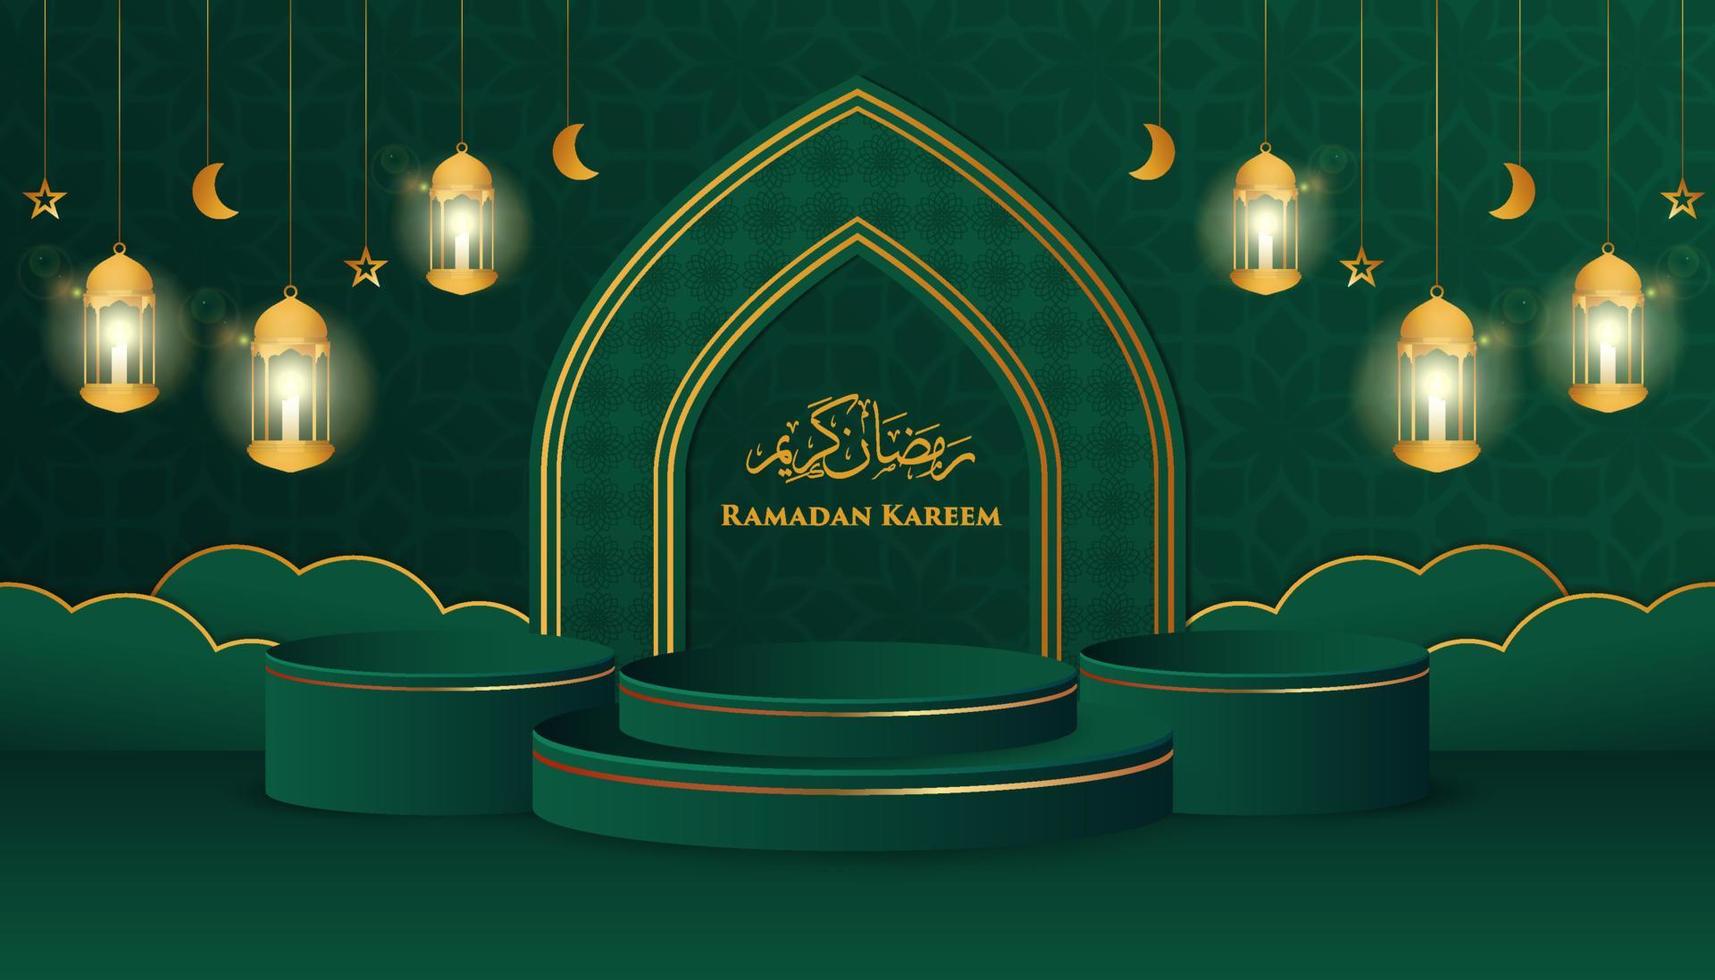 Thème ramadan kareem du podium 3d avec des étoiles, des lunes et des lanternes de cadre et d'ornement vecteur